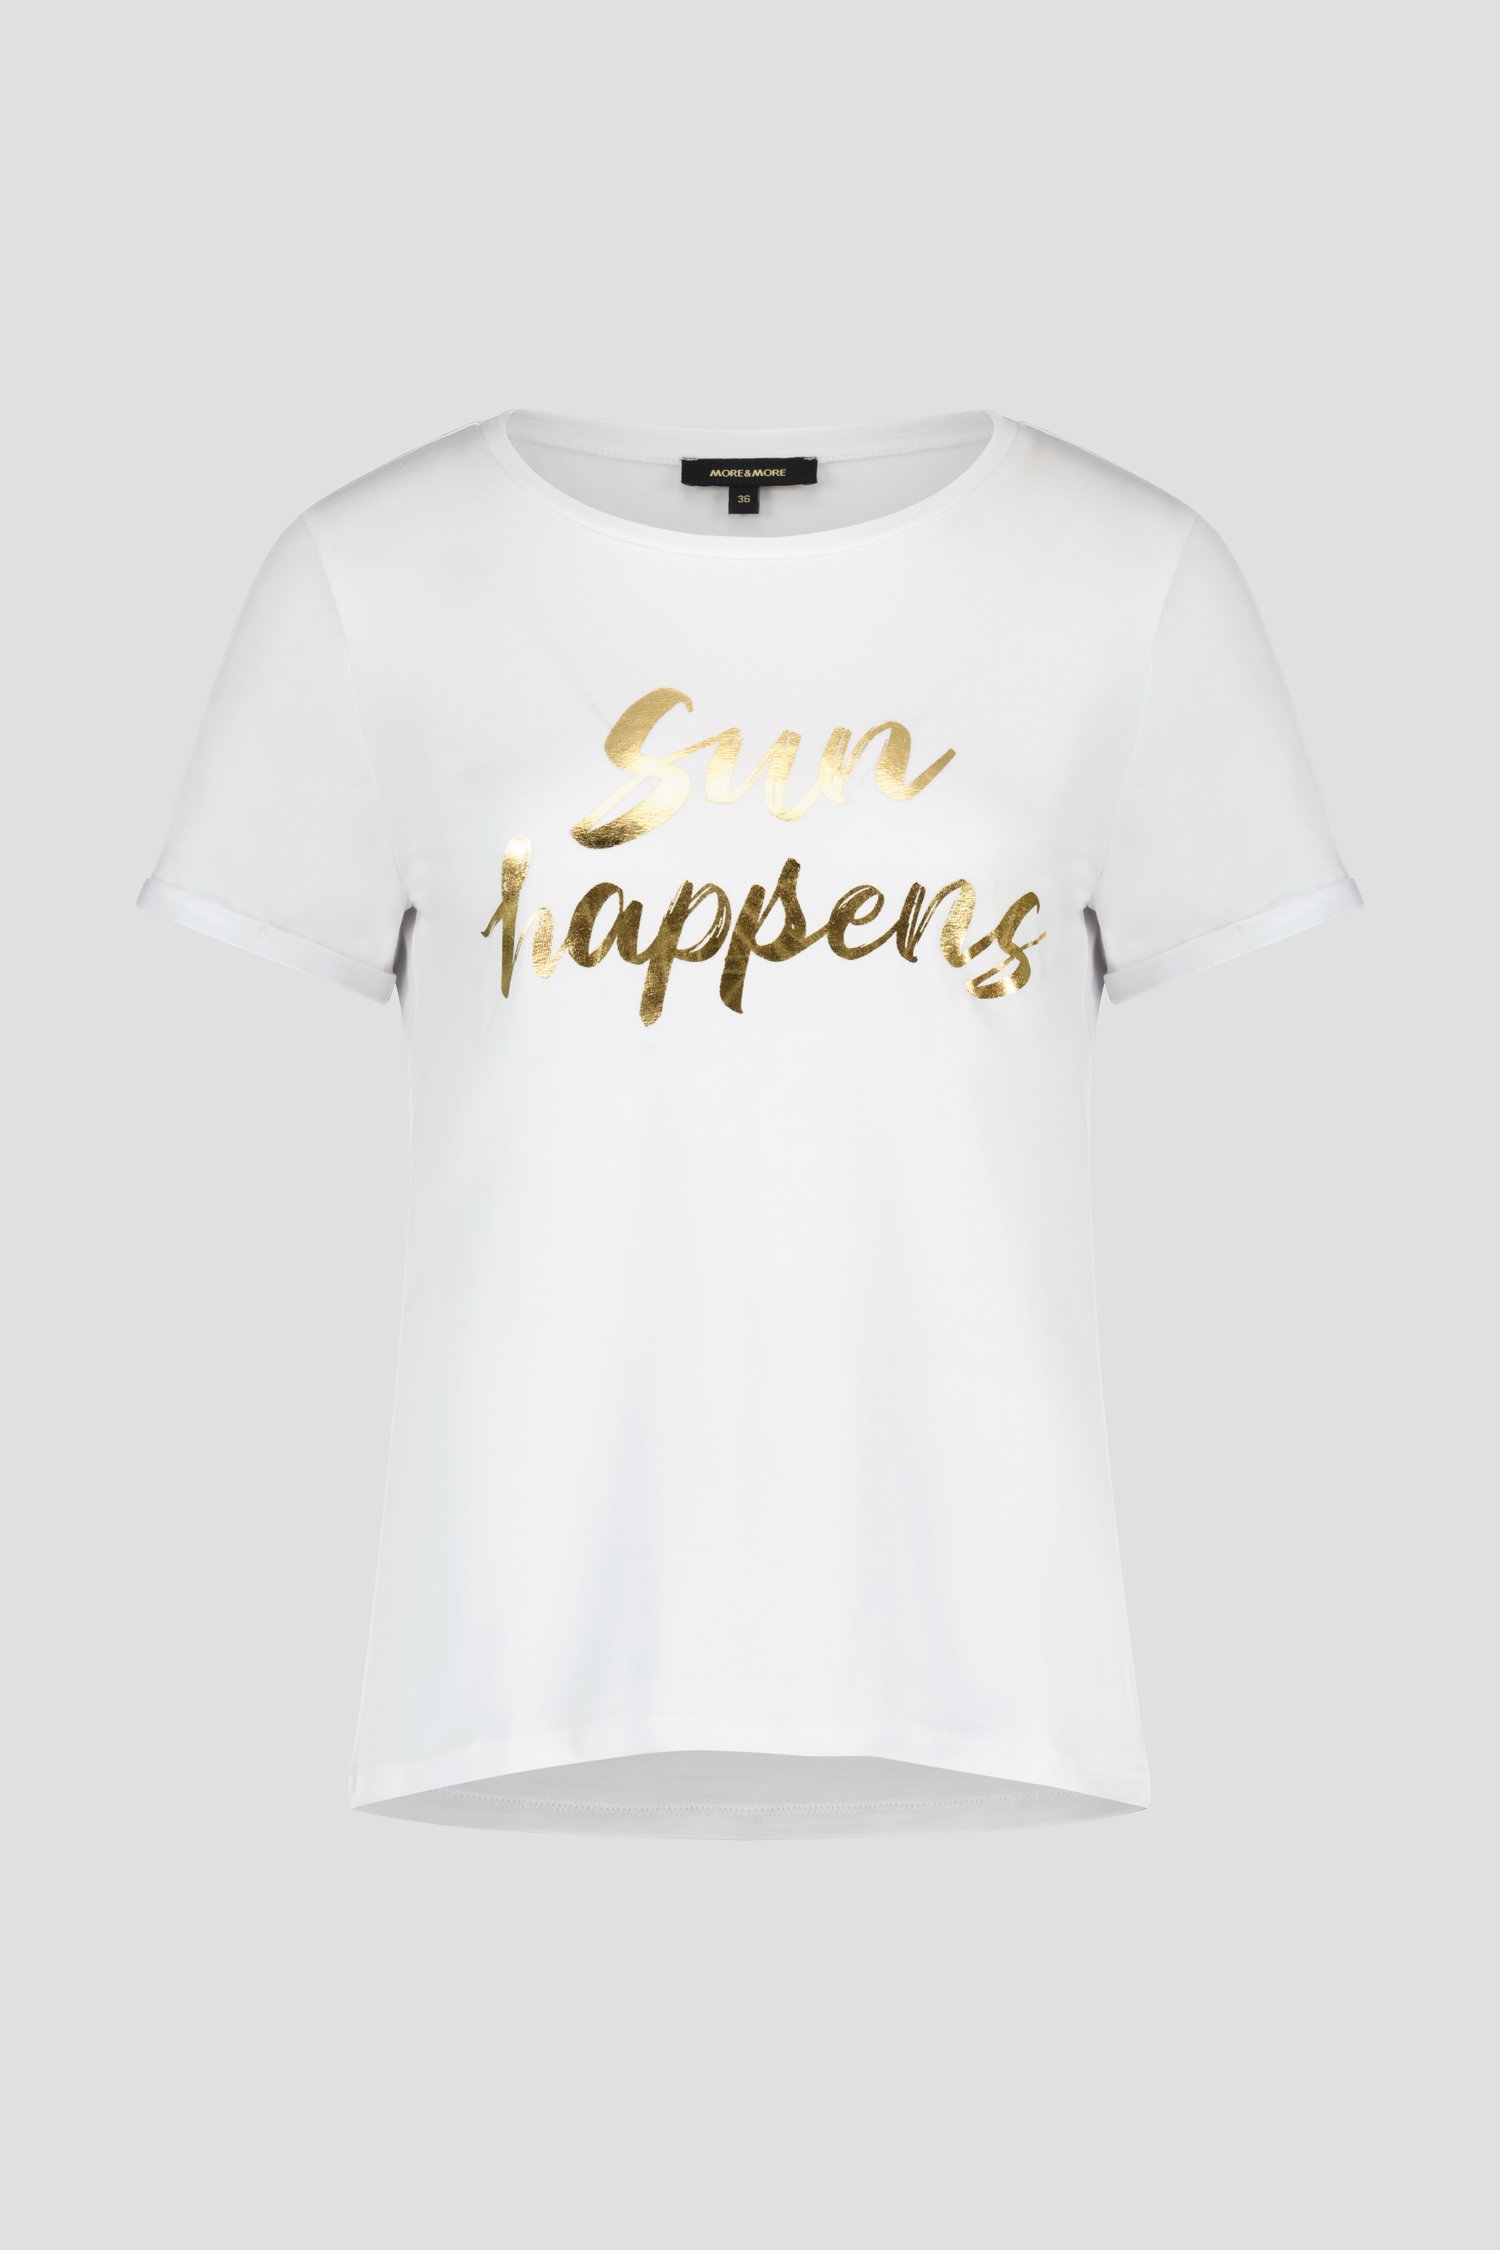 T-shirt blanc avec lettres dorées  de More & More pour Femmes